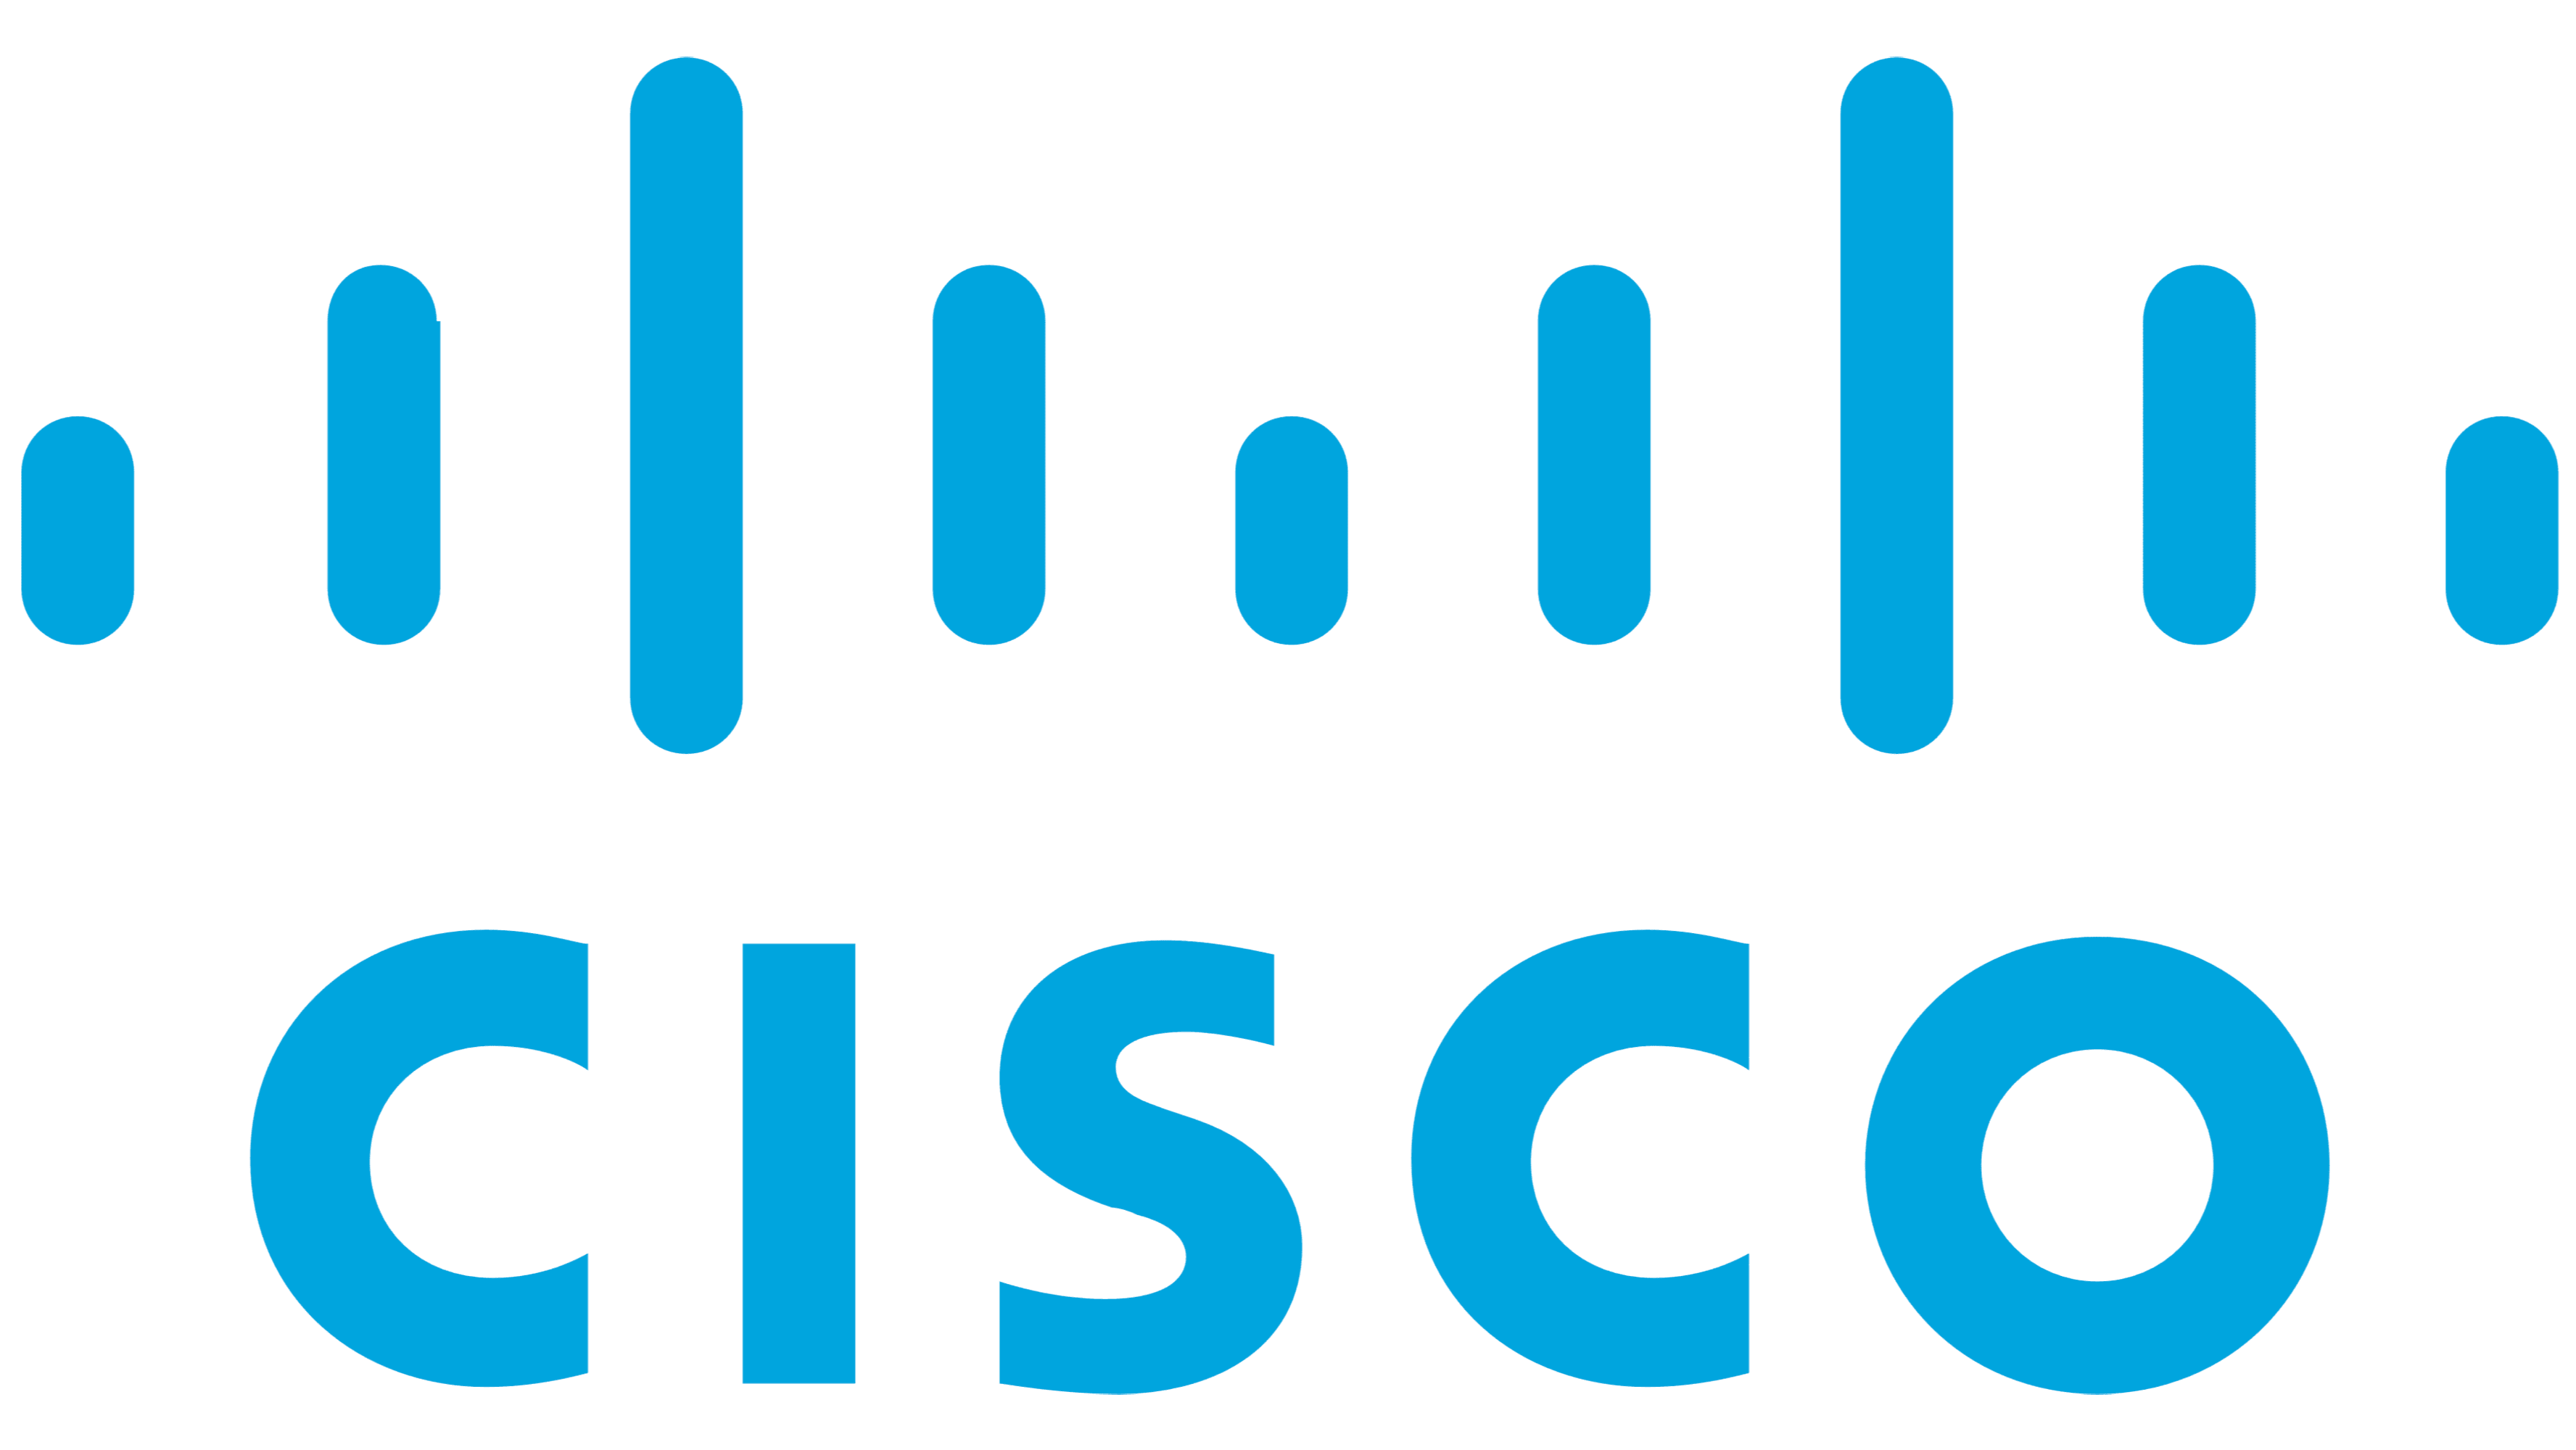 Cisco&#174; Catalyst&#174; 8000V 边缘软件 (Catalyst 8000V) 17.11.1a 发布 - 虚拟路由器